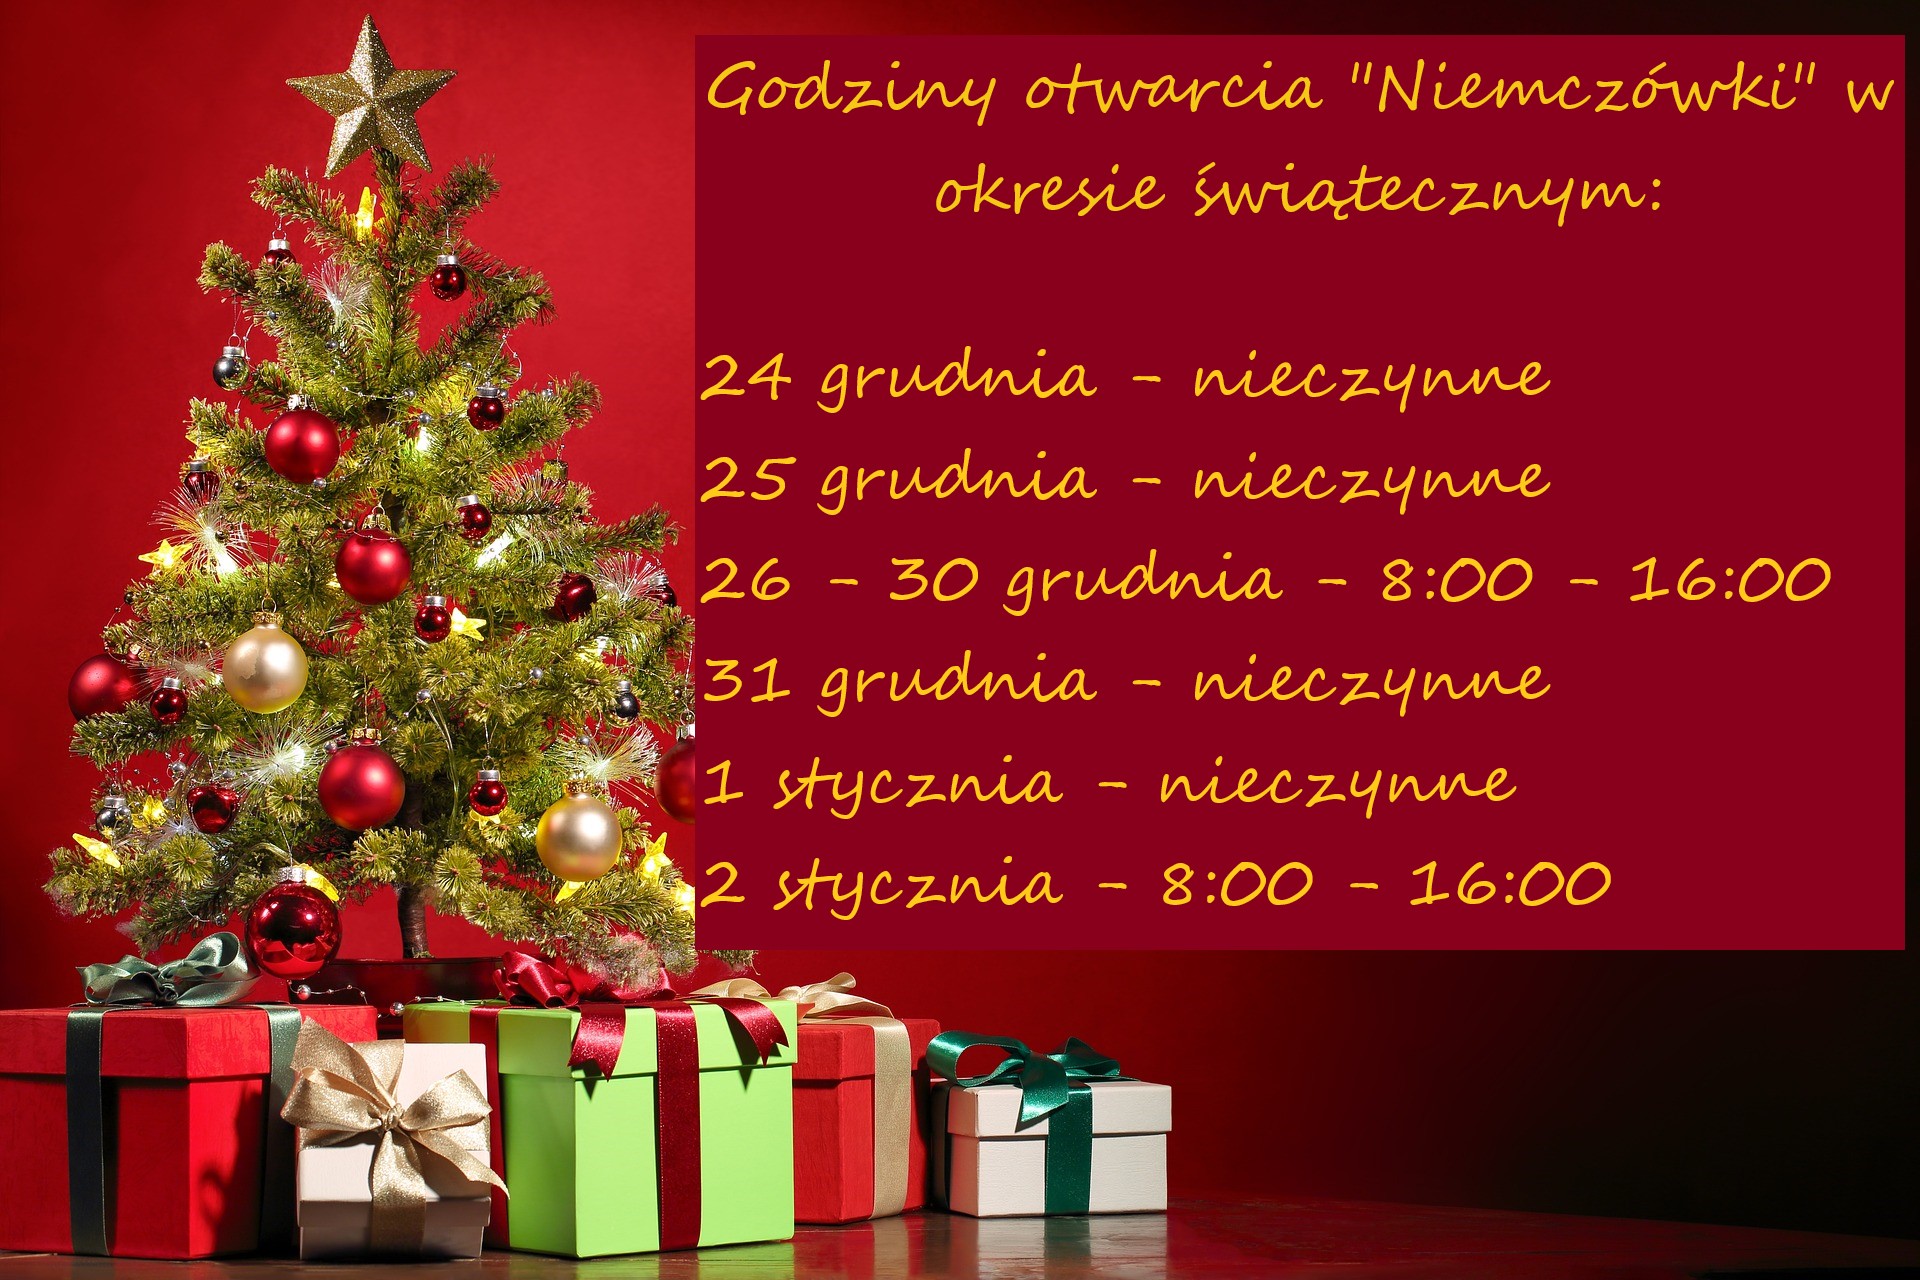 Godziny otwarcia "Niemczówki" w okresie świątecznym w 2022/2023 r.